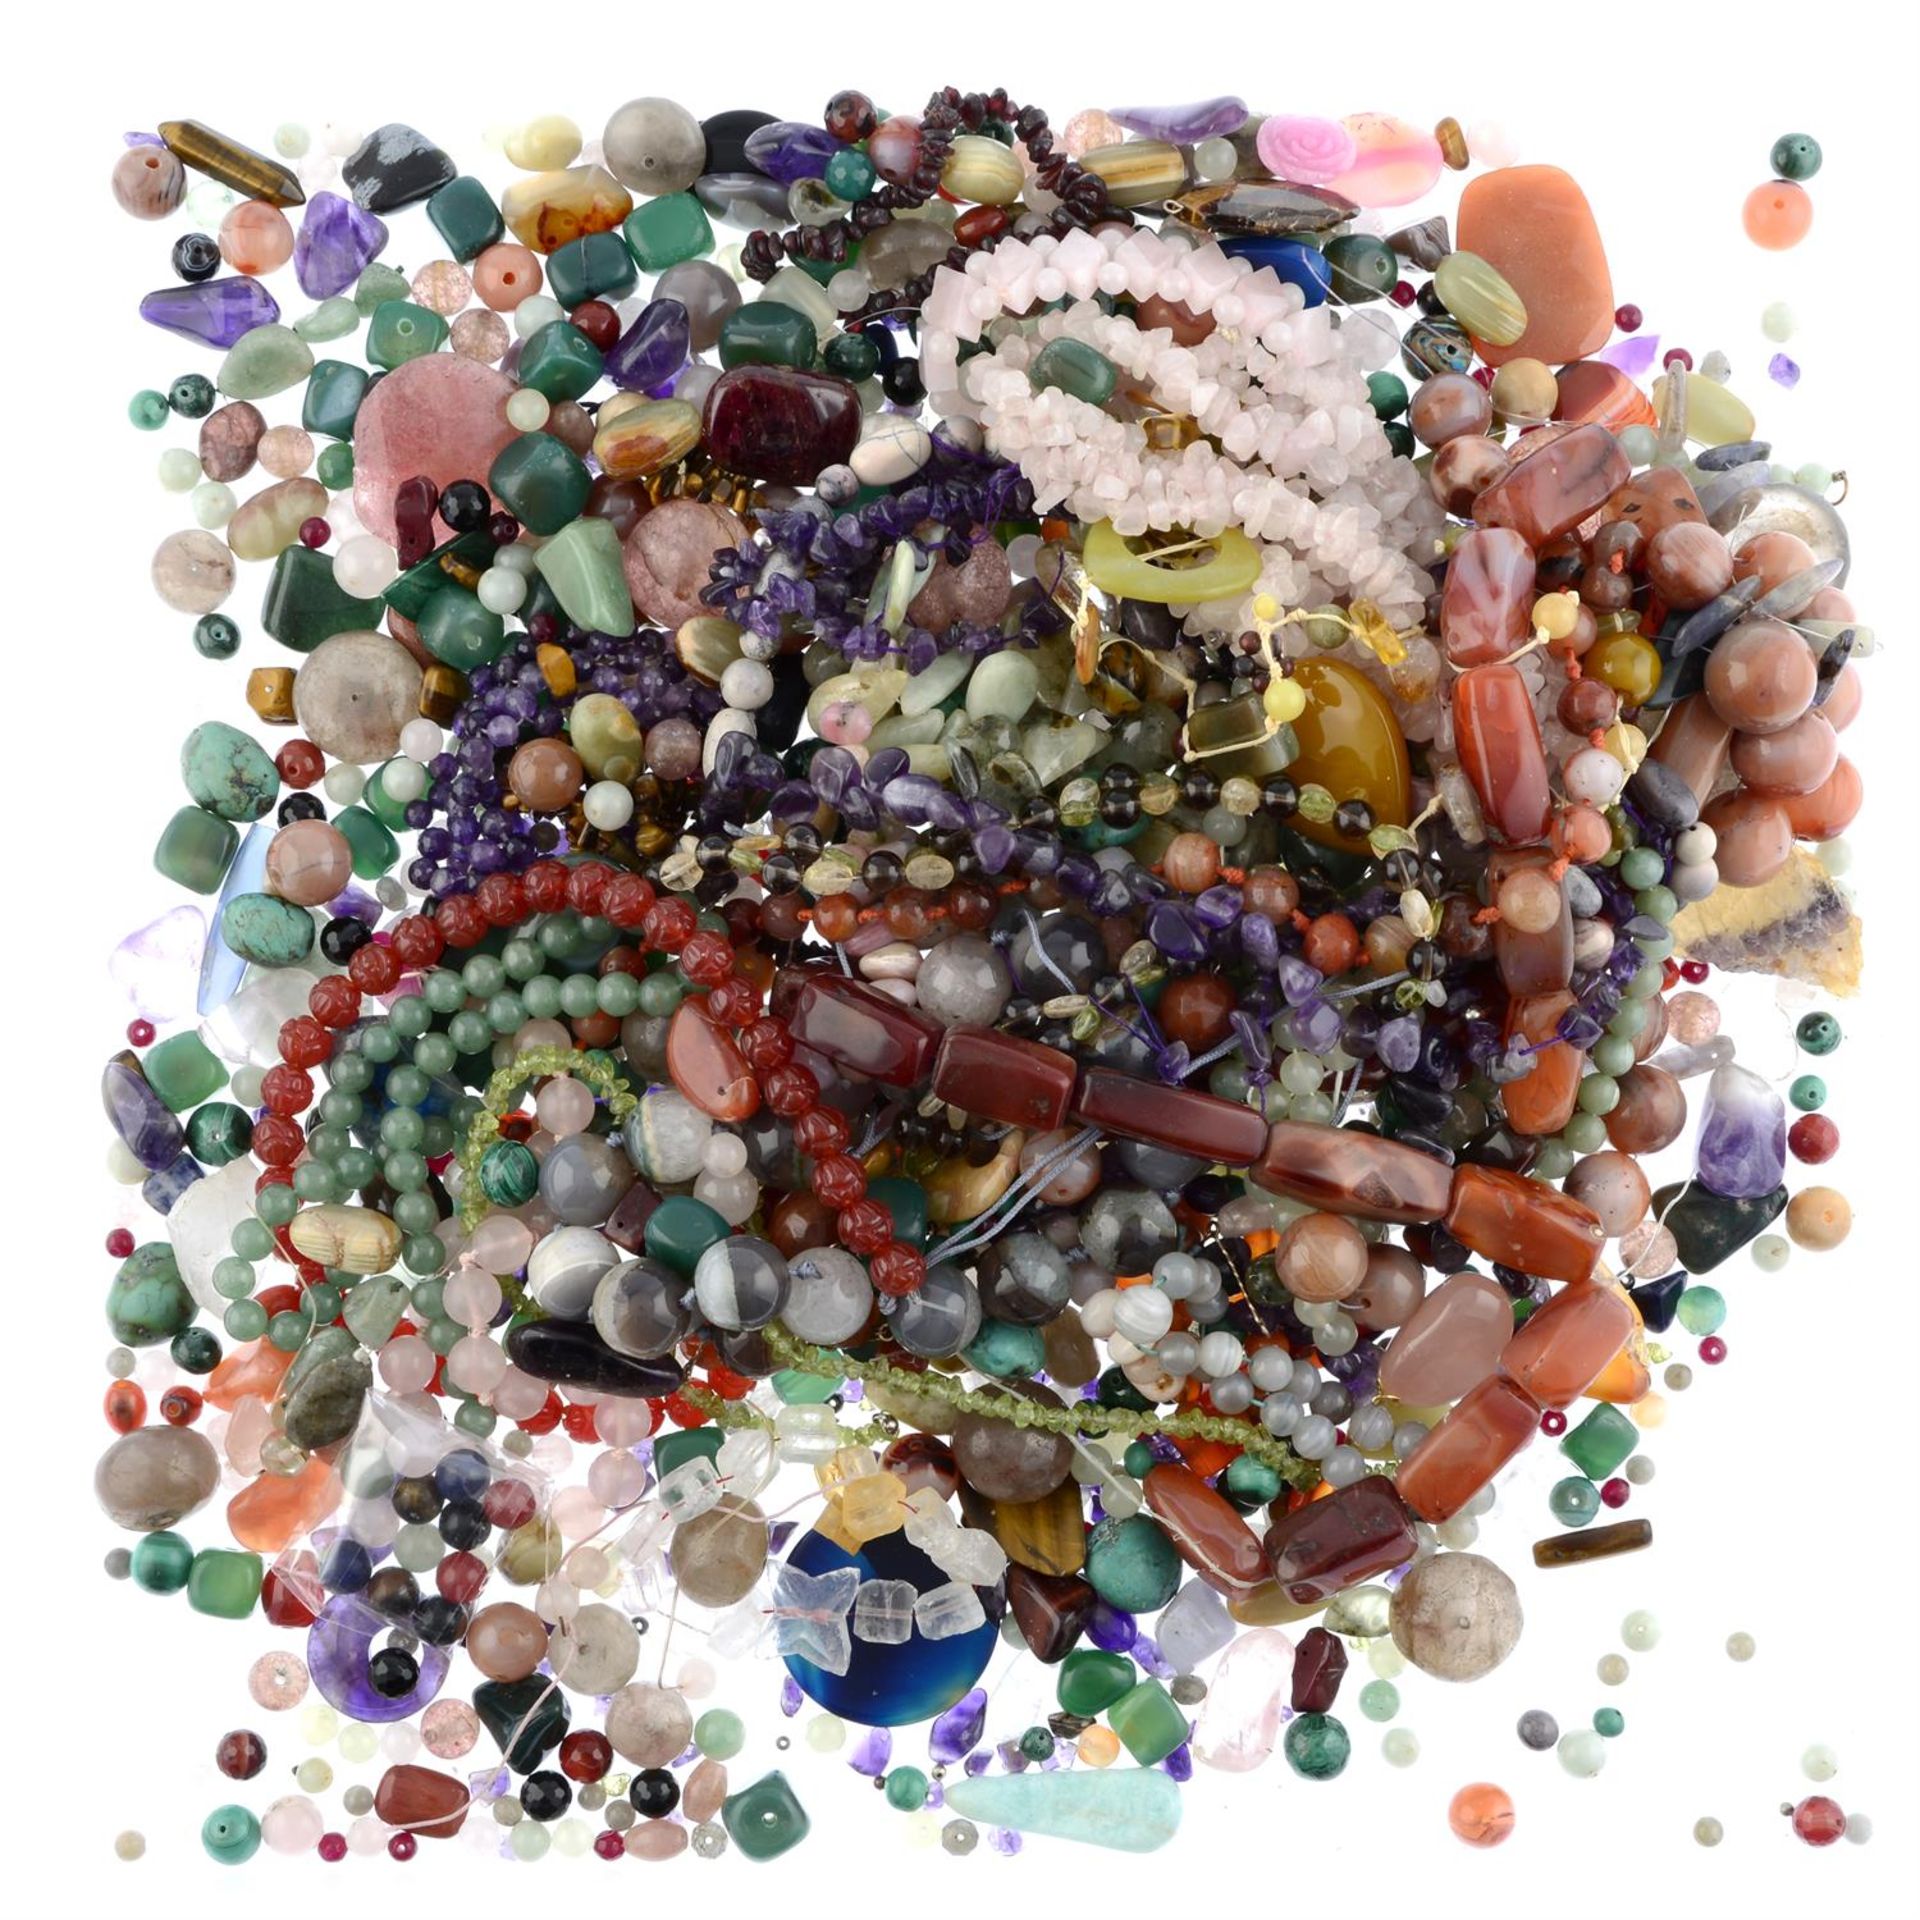 Assorted gemstones, 5.67kg - Image 2 of 2